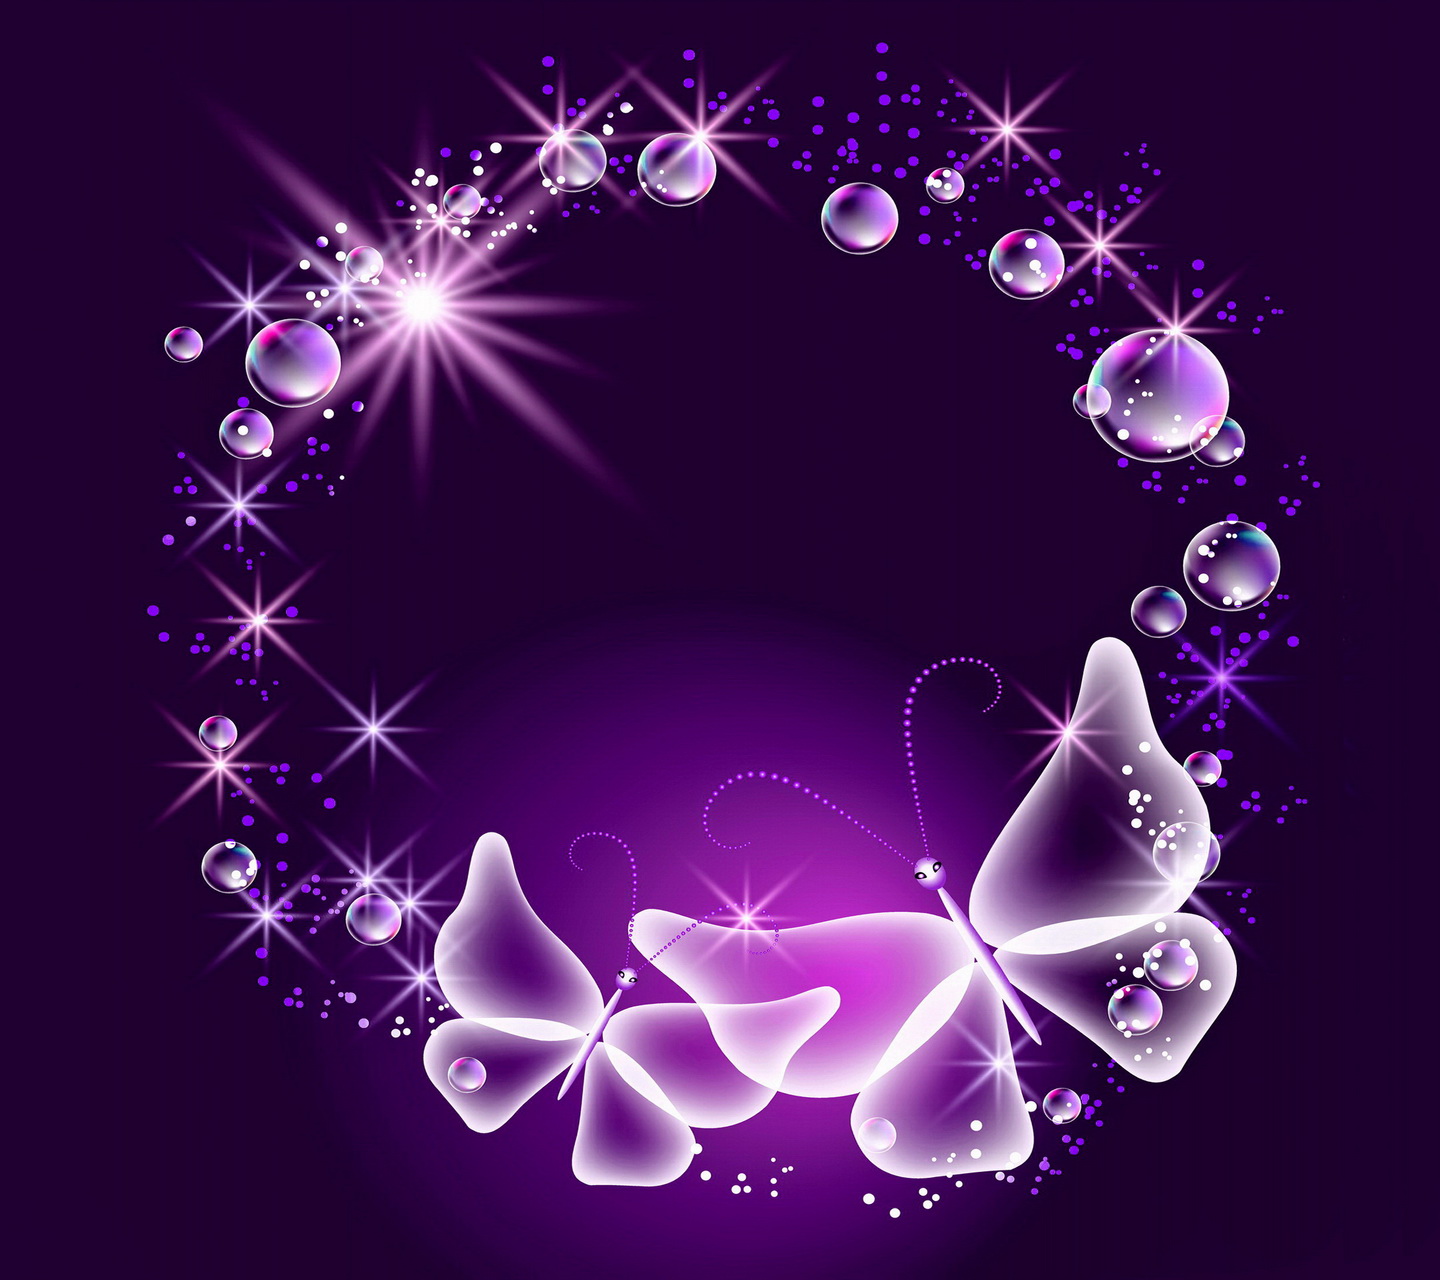 Neon Purple Butterfly